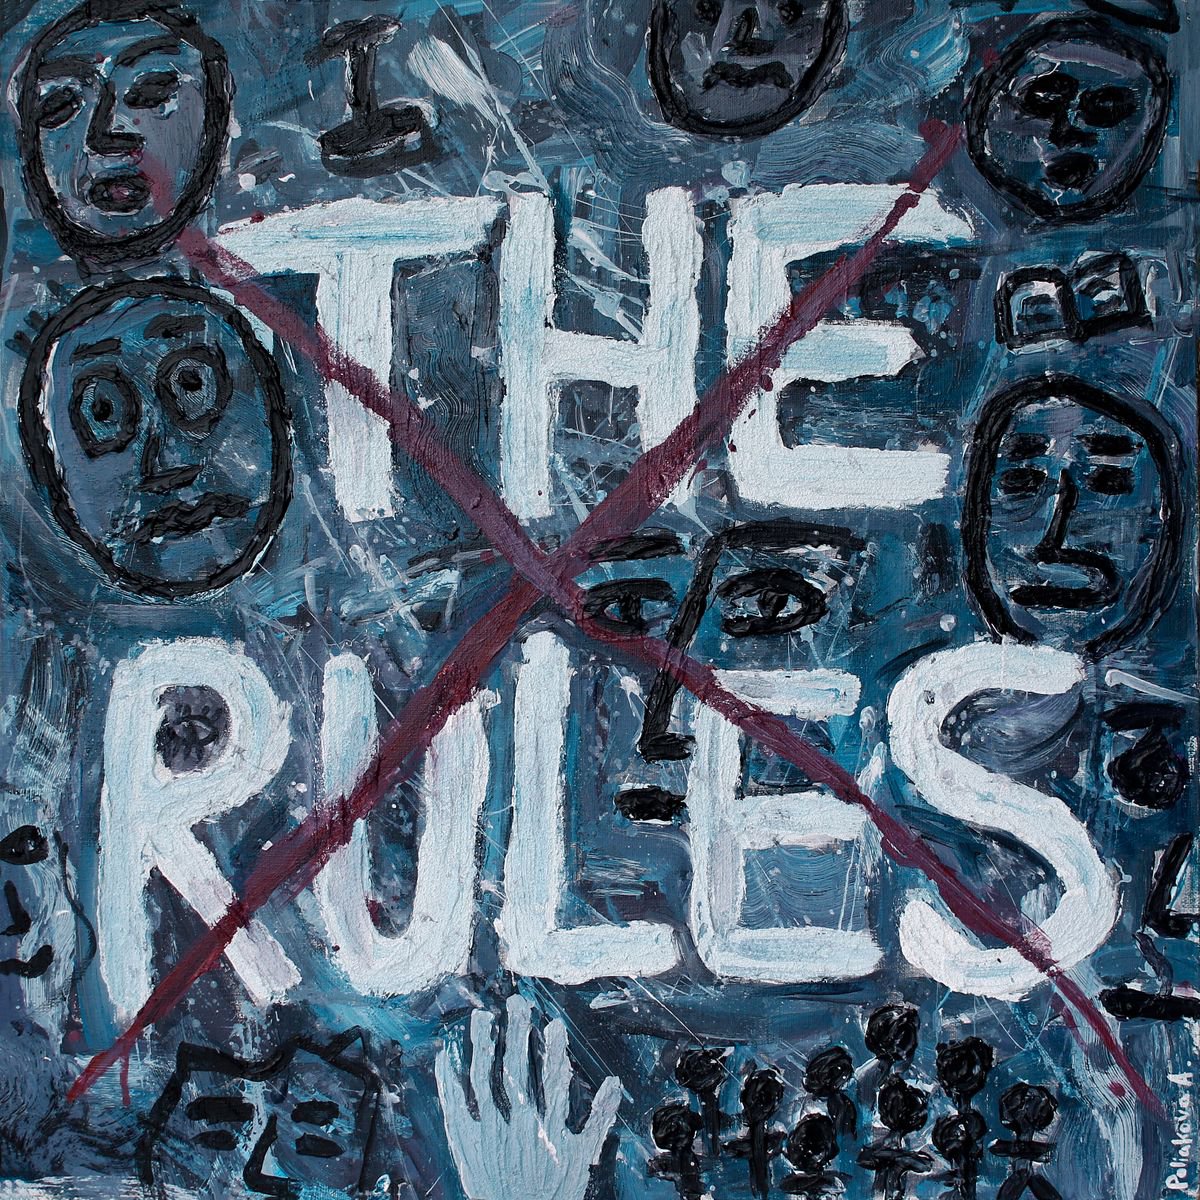 No rules by Anna Poliakova